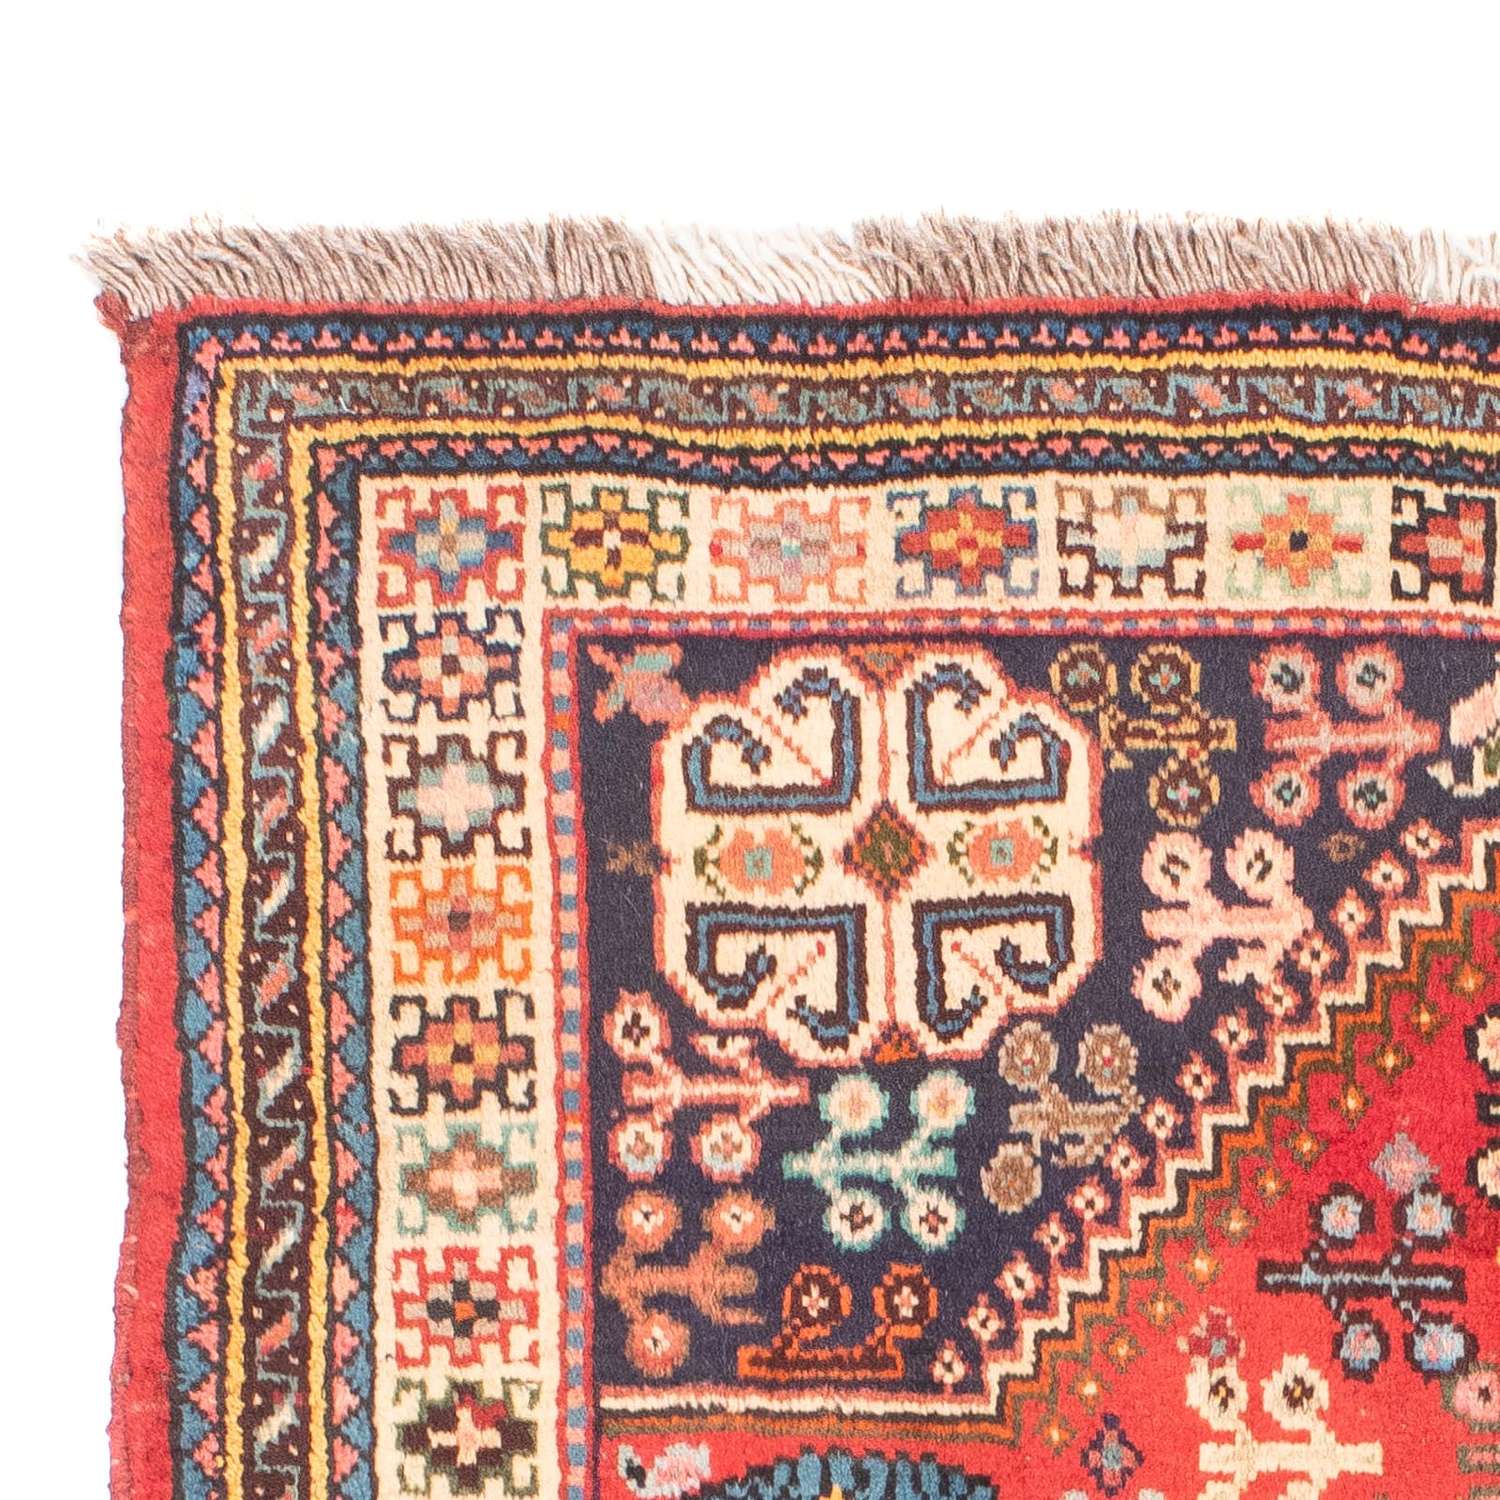 Persisk teppe - Nomadisk - 175 x 110 cm - mørk rød